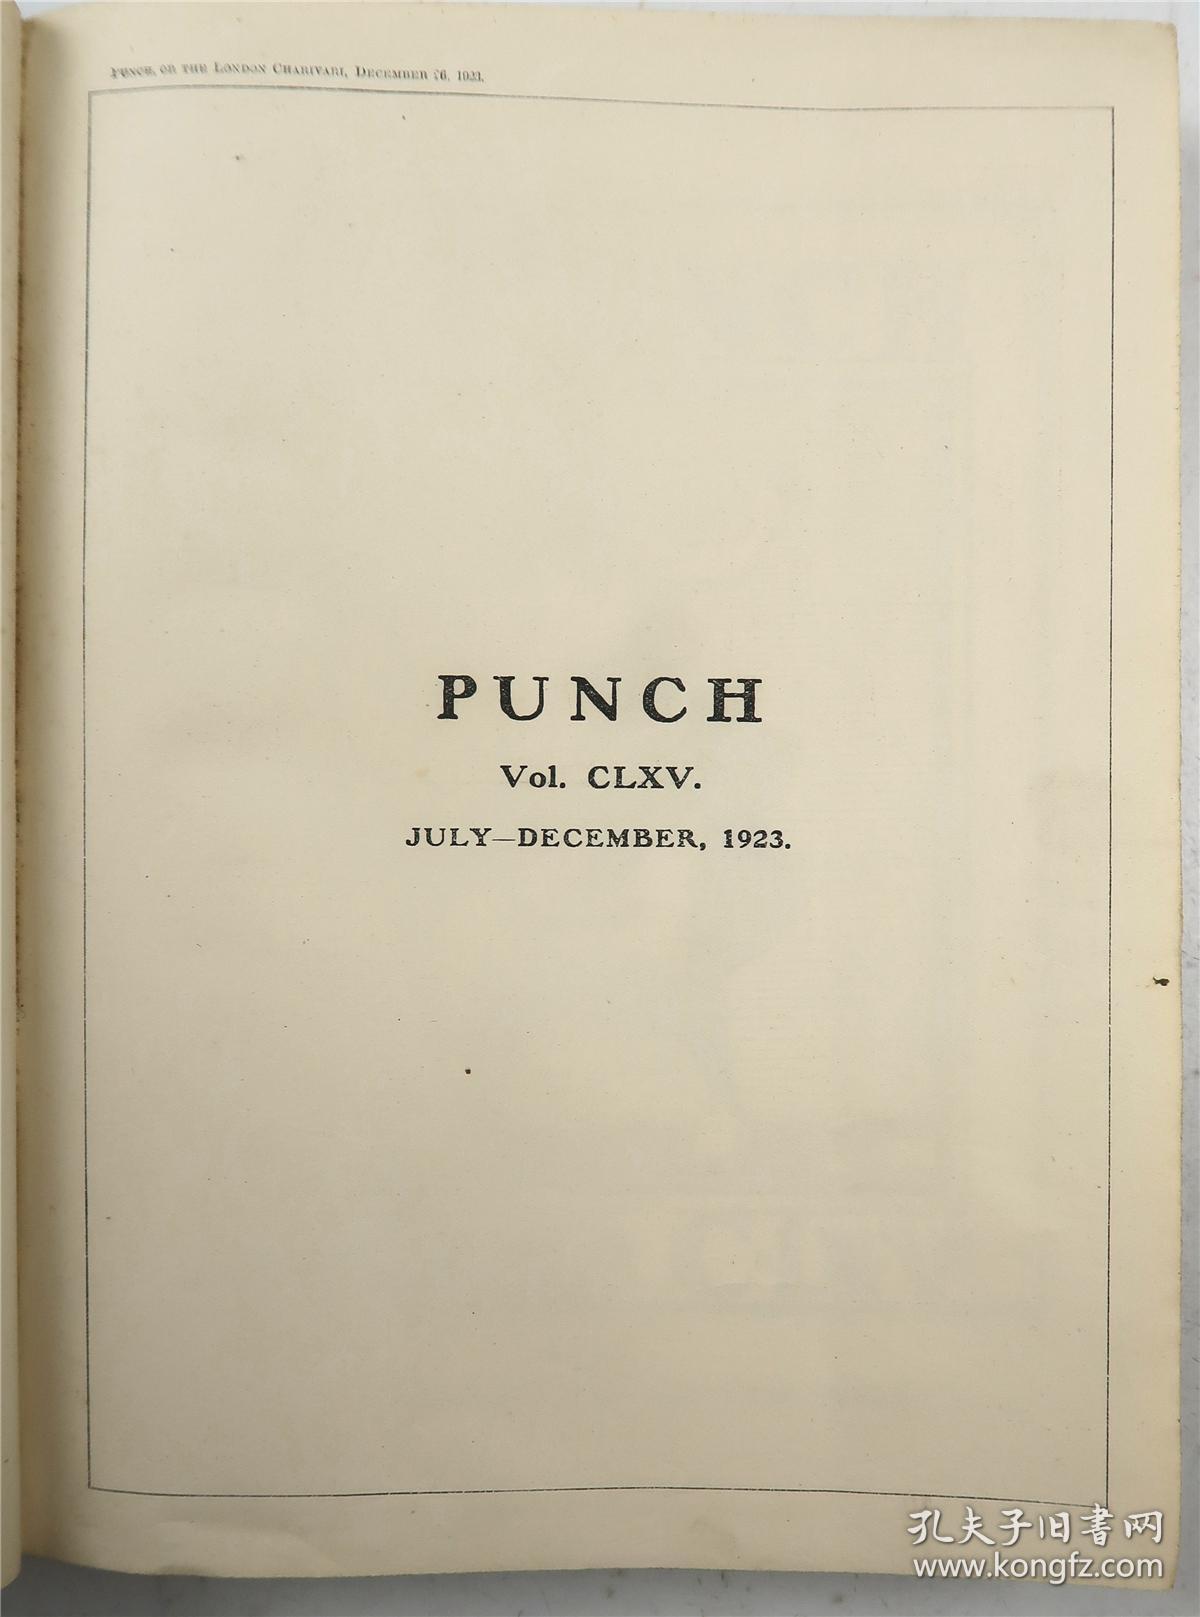 讽刺漫画杂志《punch》(1923年7-12月合集·大16开精装·漫画数百幅)